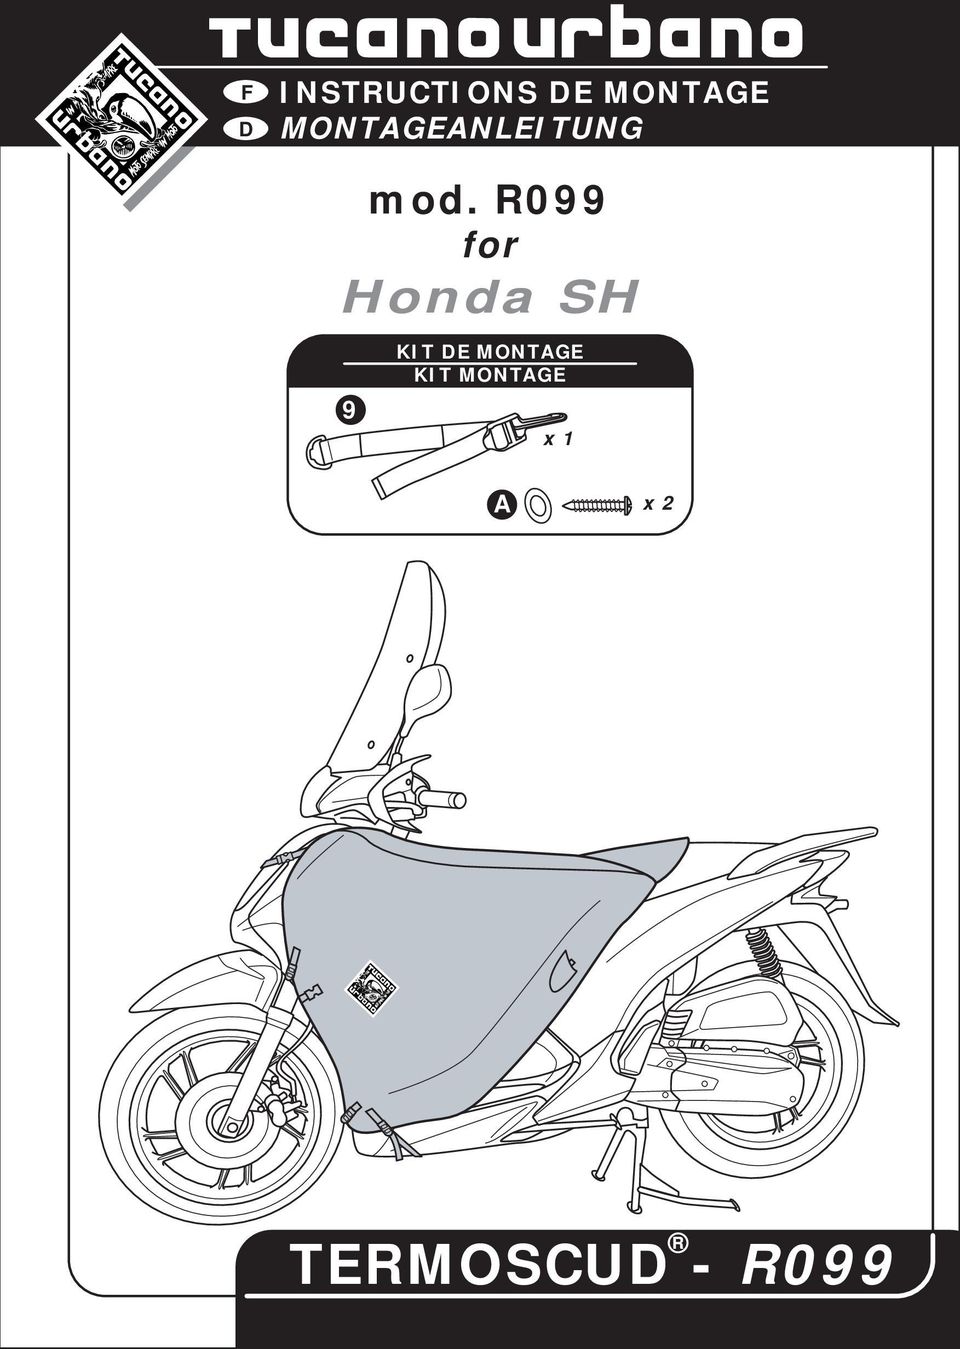 mod. R099 for Honda SH 9